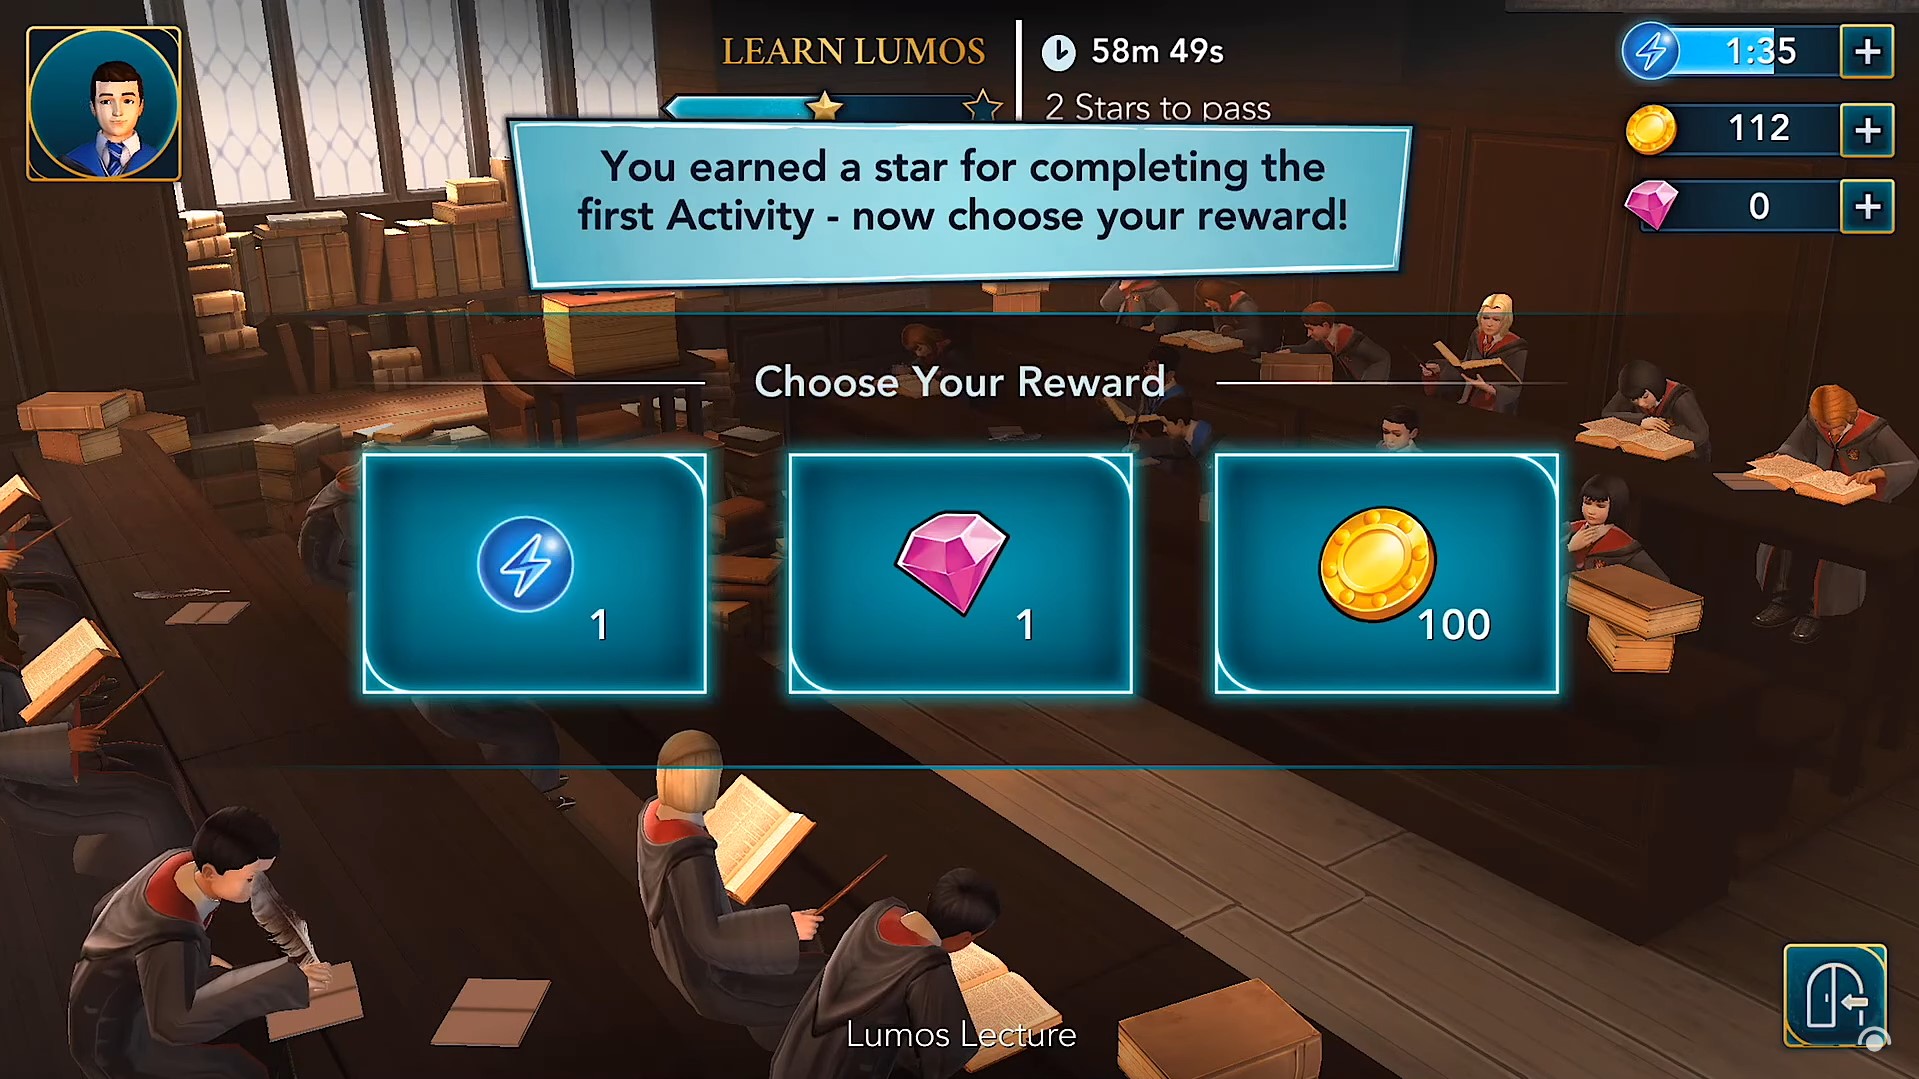 Harry Potter game rewards